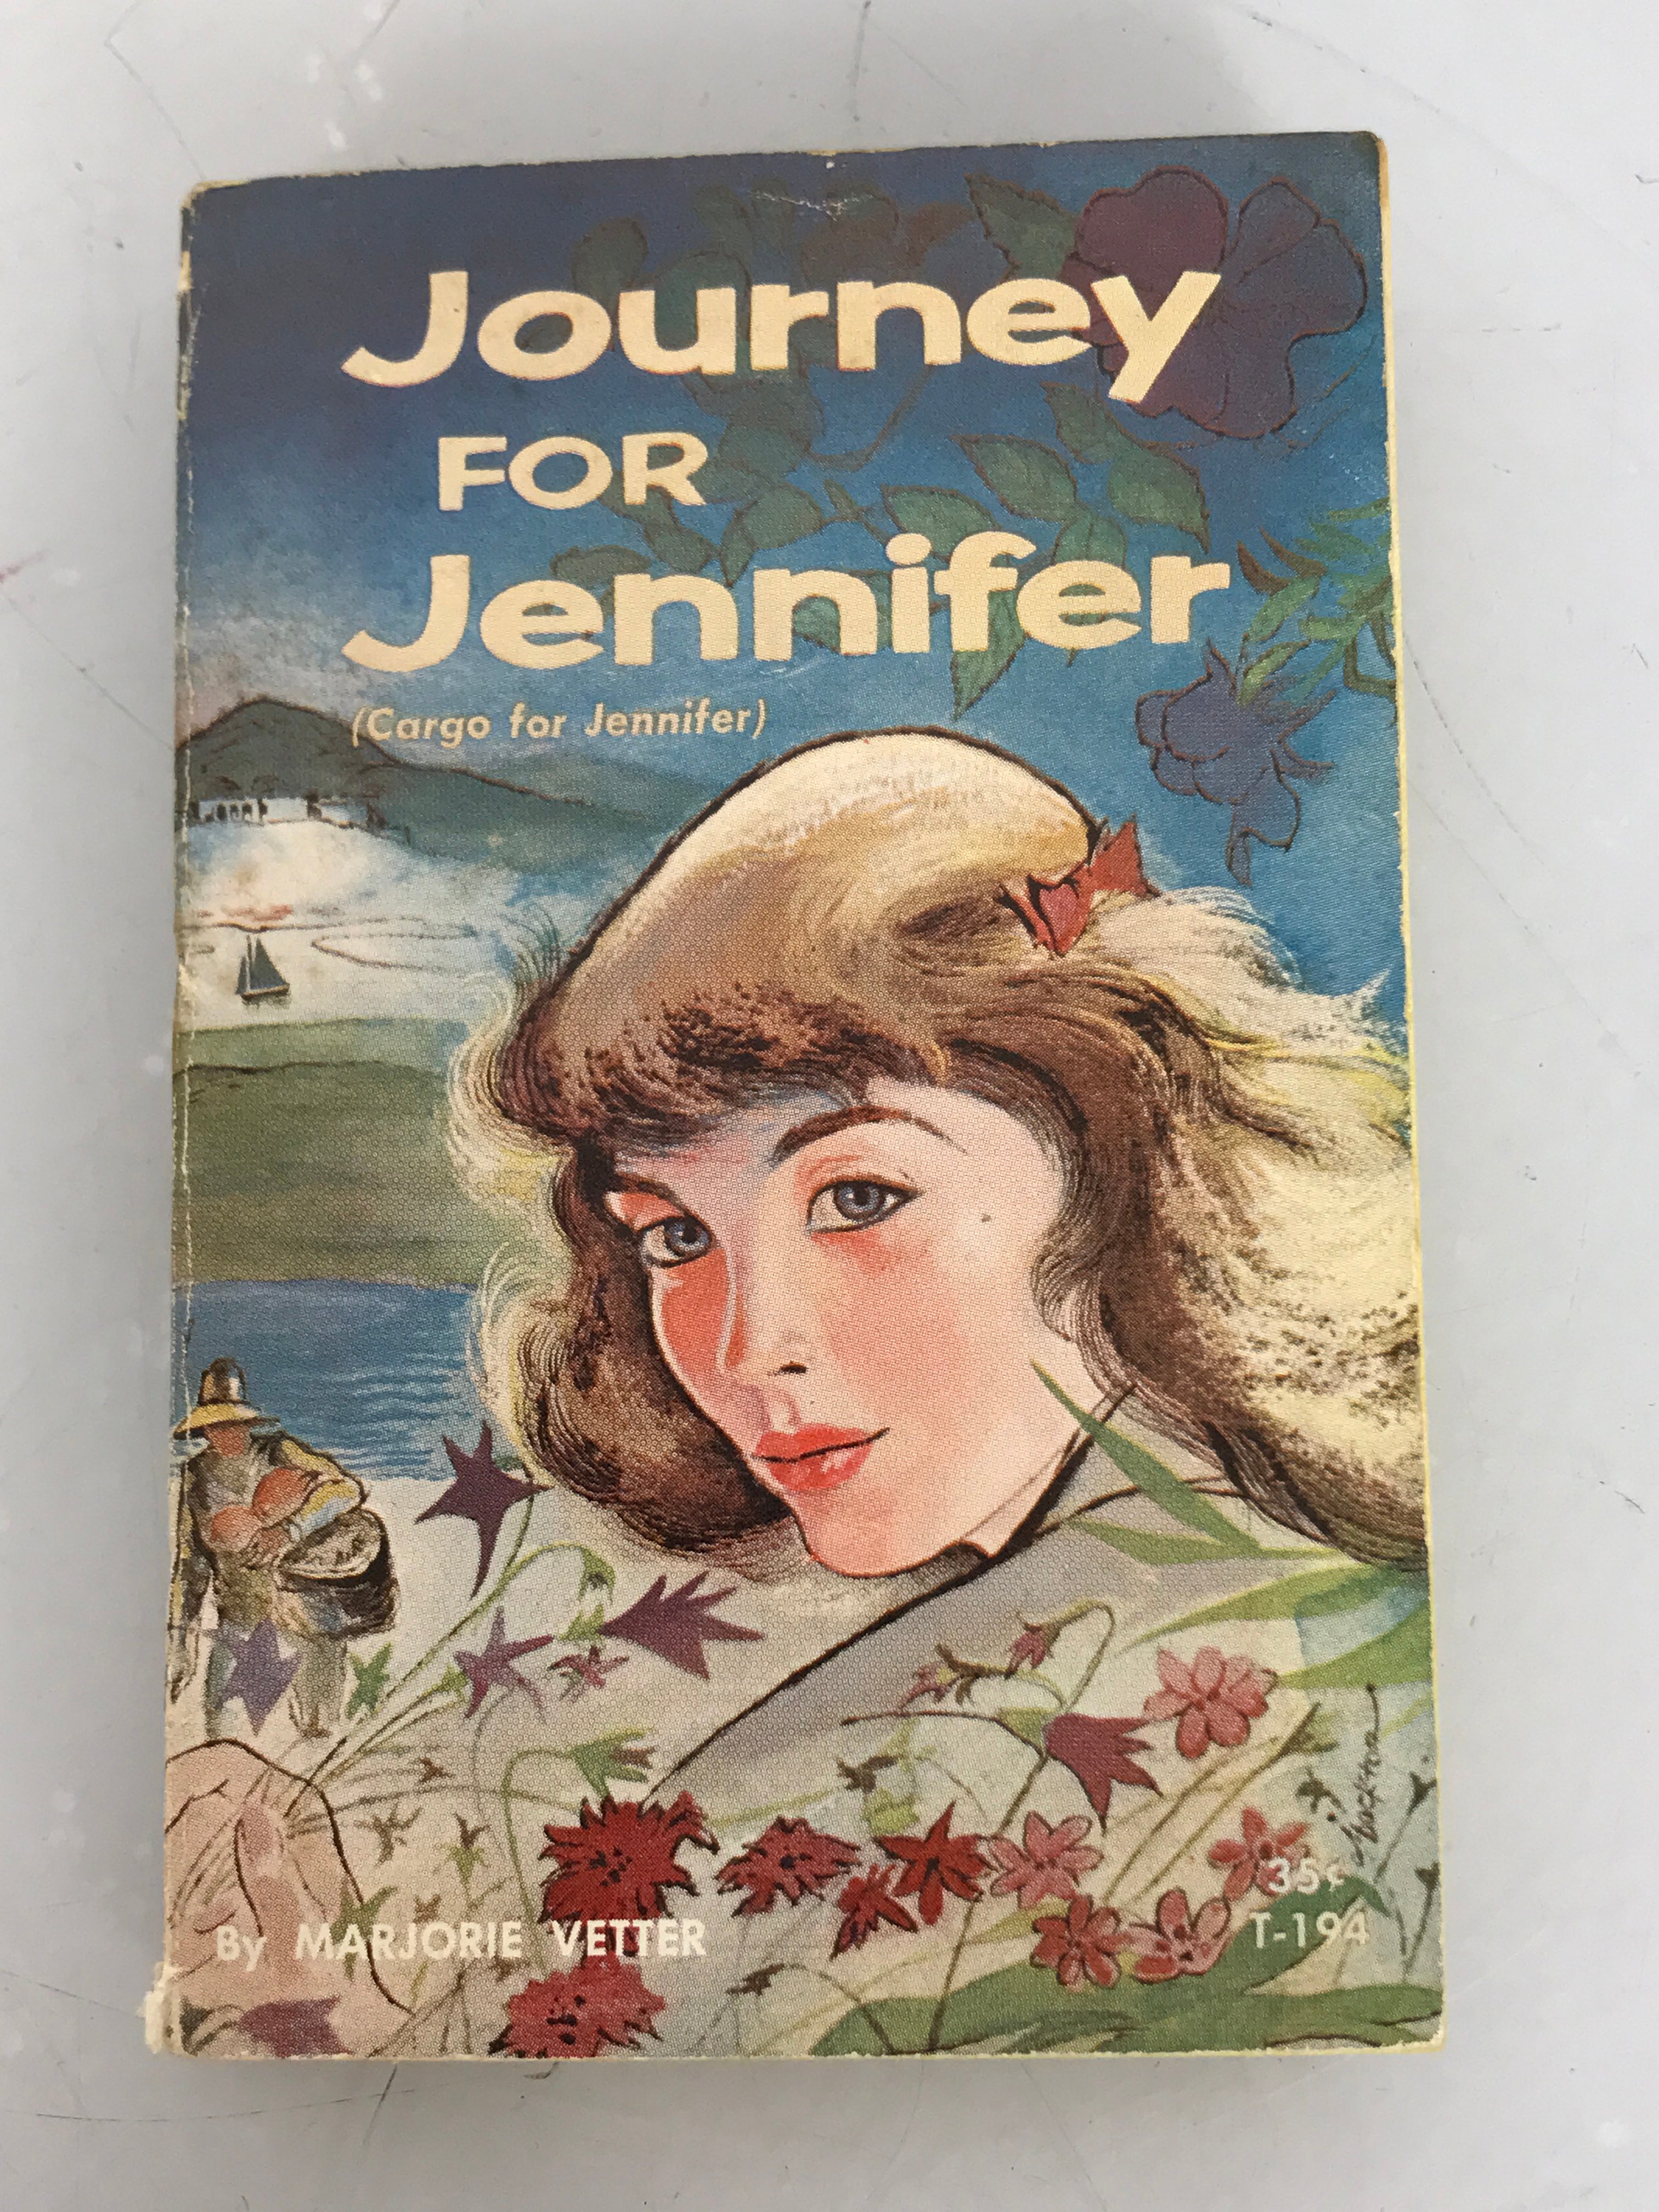 Journey for Jennifer (Cargo for Jennifer) Marjorie Vetter 1960 Scholastic Books